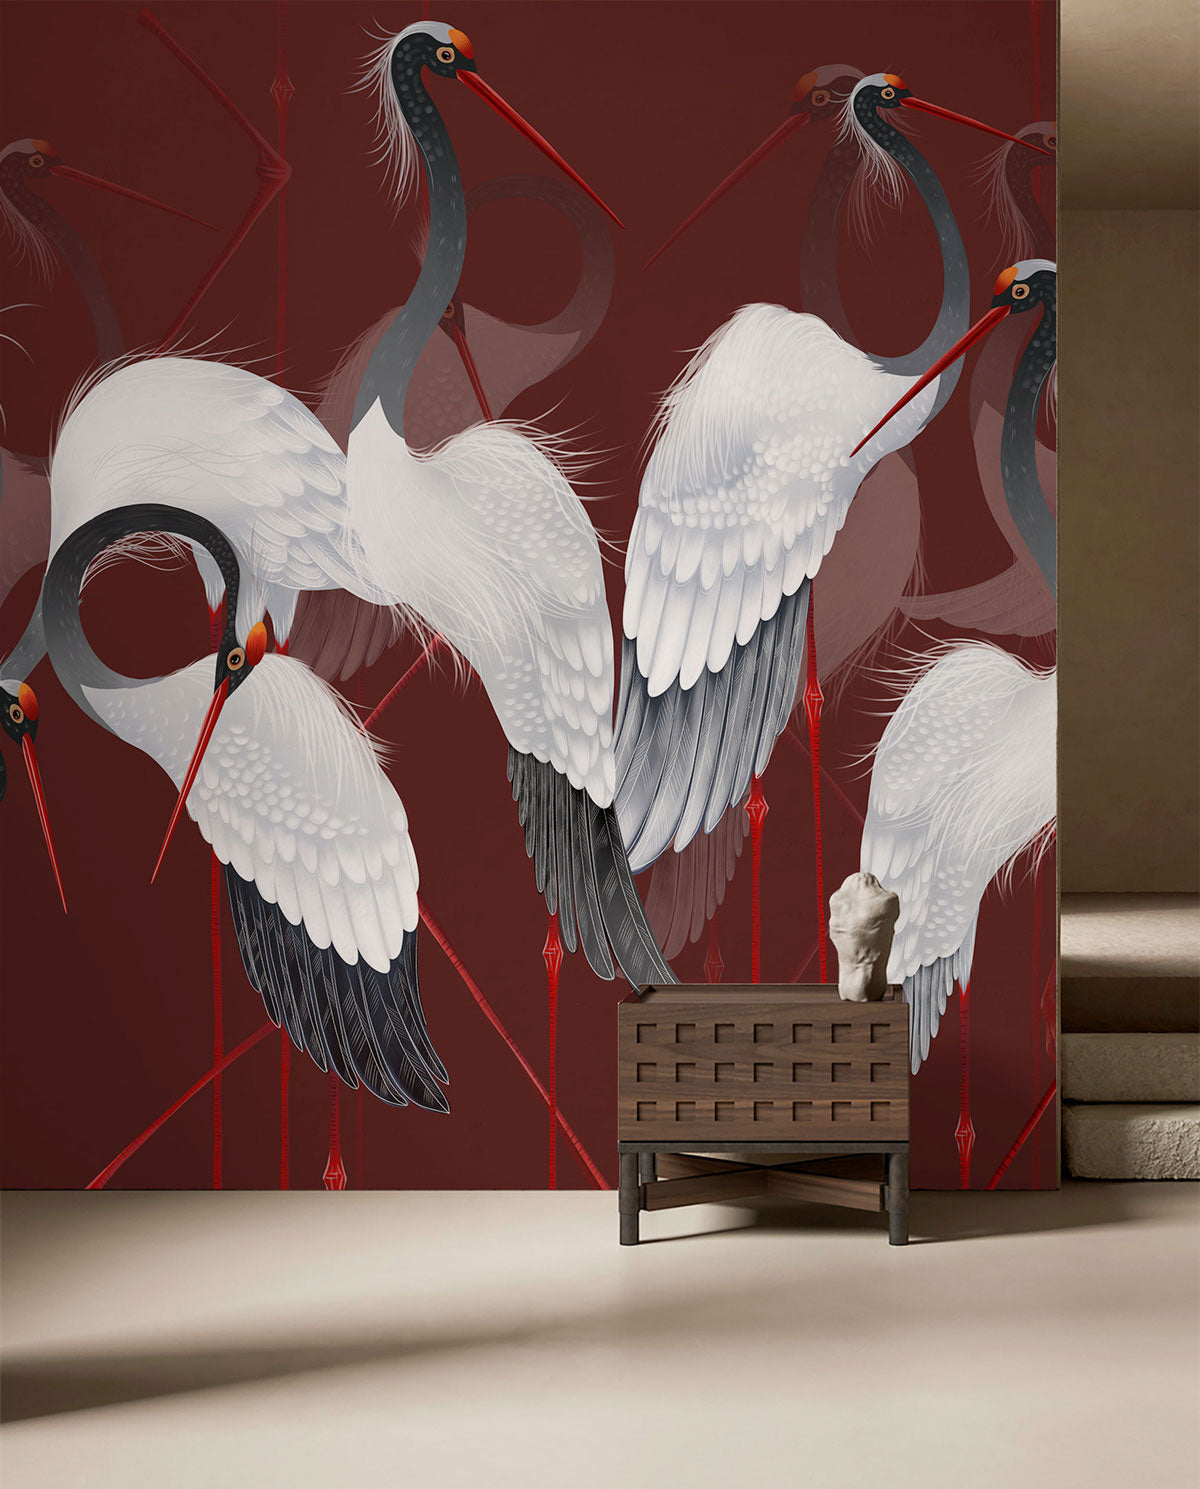 crane bird animal wall mural home interior design